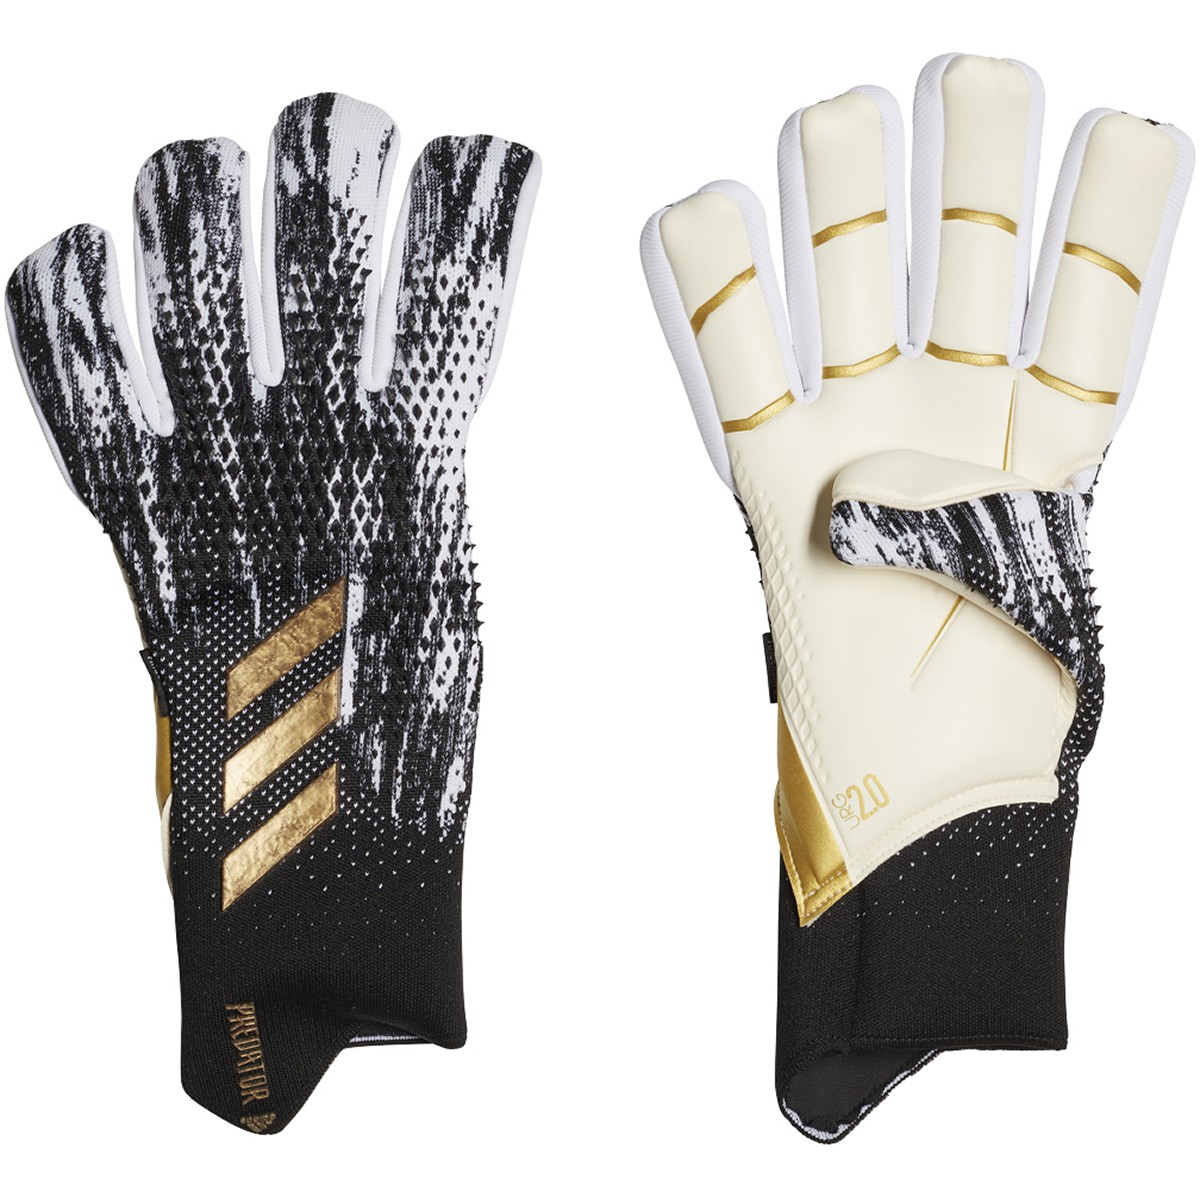 adidas Predator Pro Finger Save GK Gloves - Black/White/Gold 